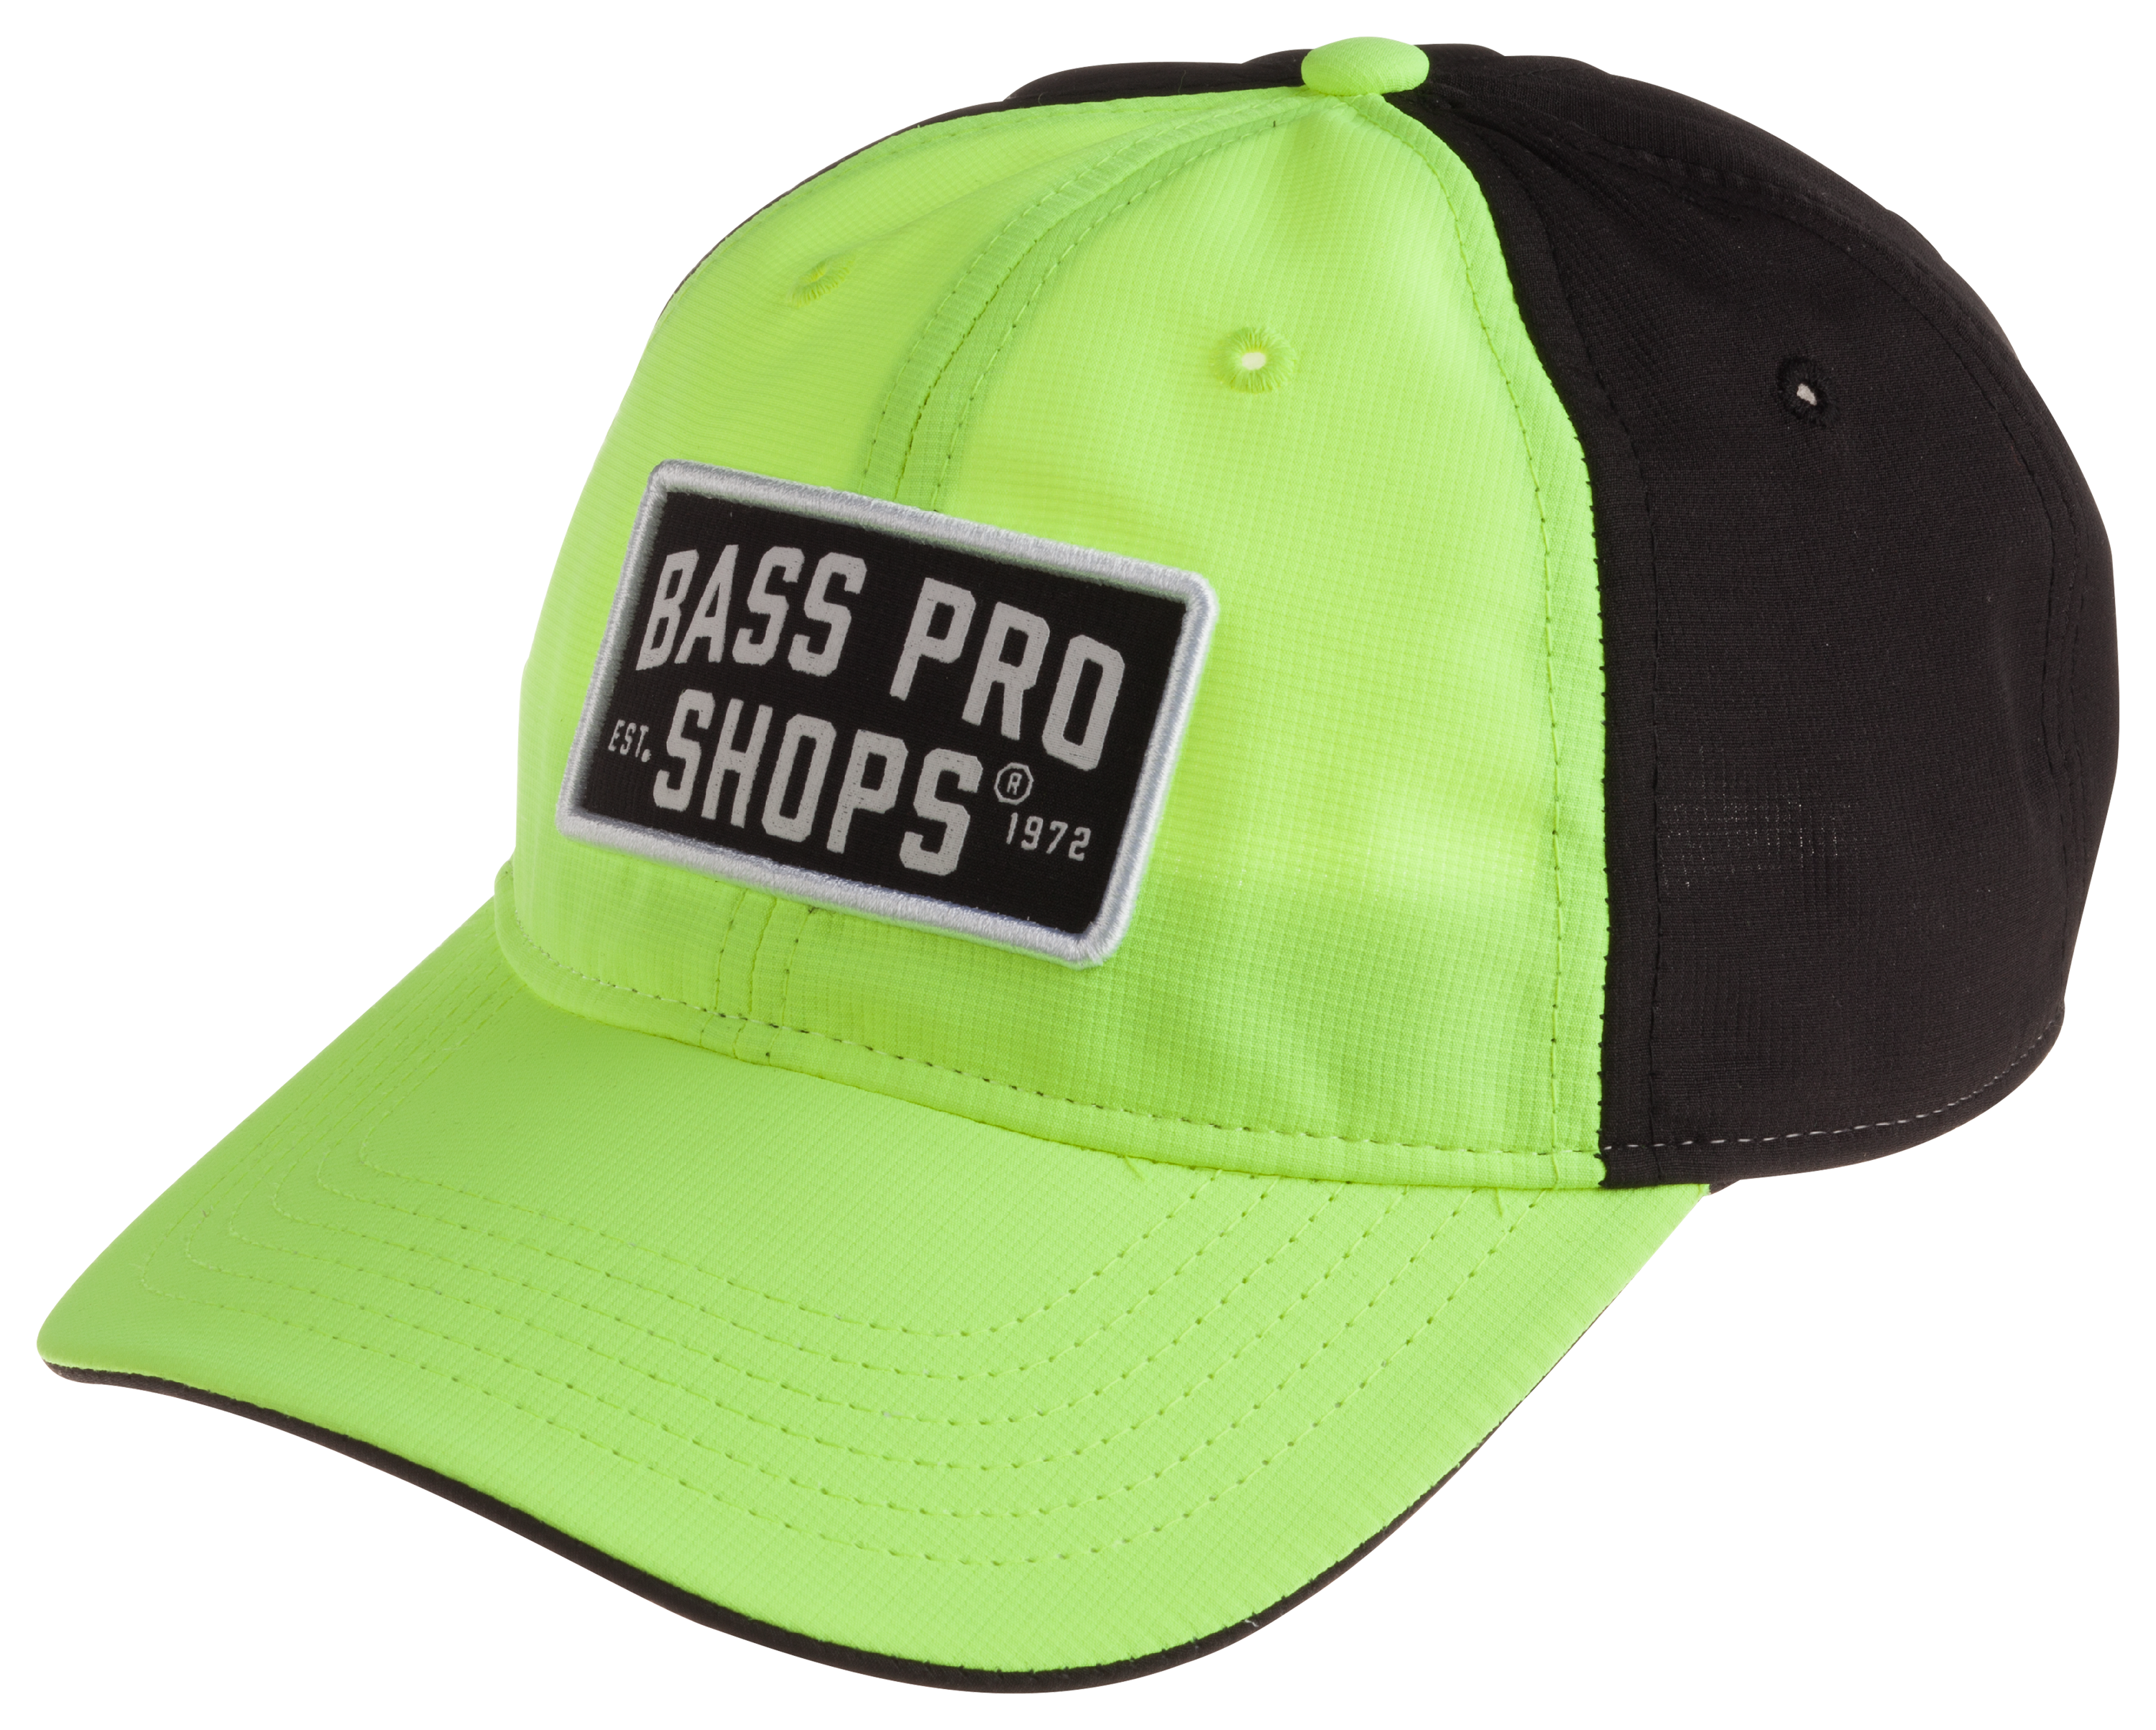 Bass Pro Shops Yellow Ripstop Cap